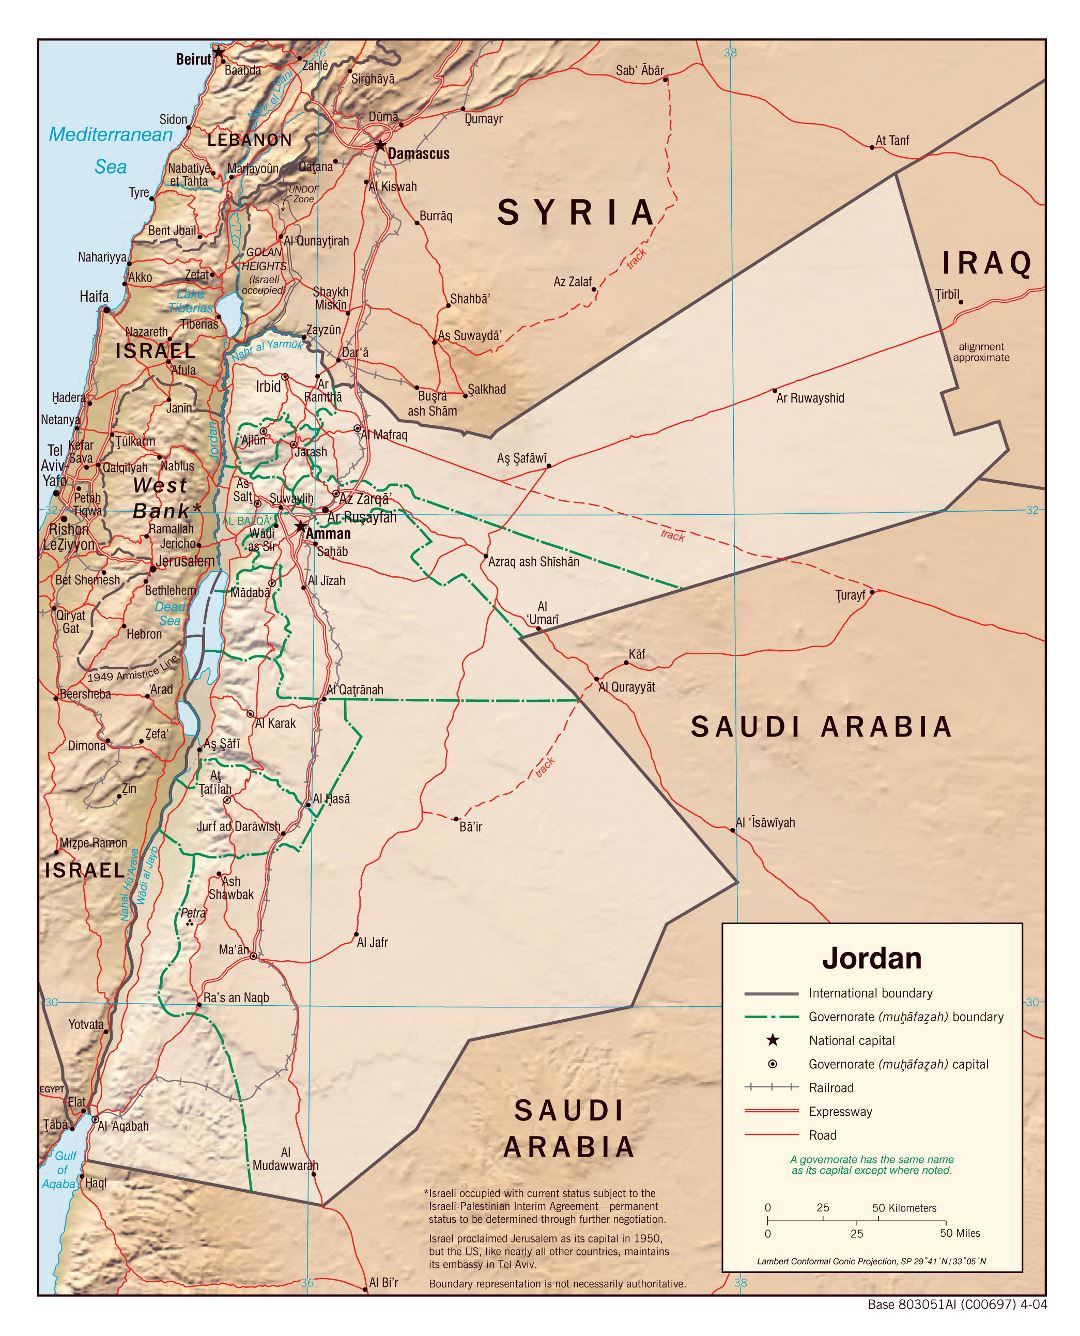 Grande mapa político y administrativo de Jordania con relieve, carreteras, ferrocarriles y principales ciudades - 2004